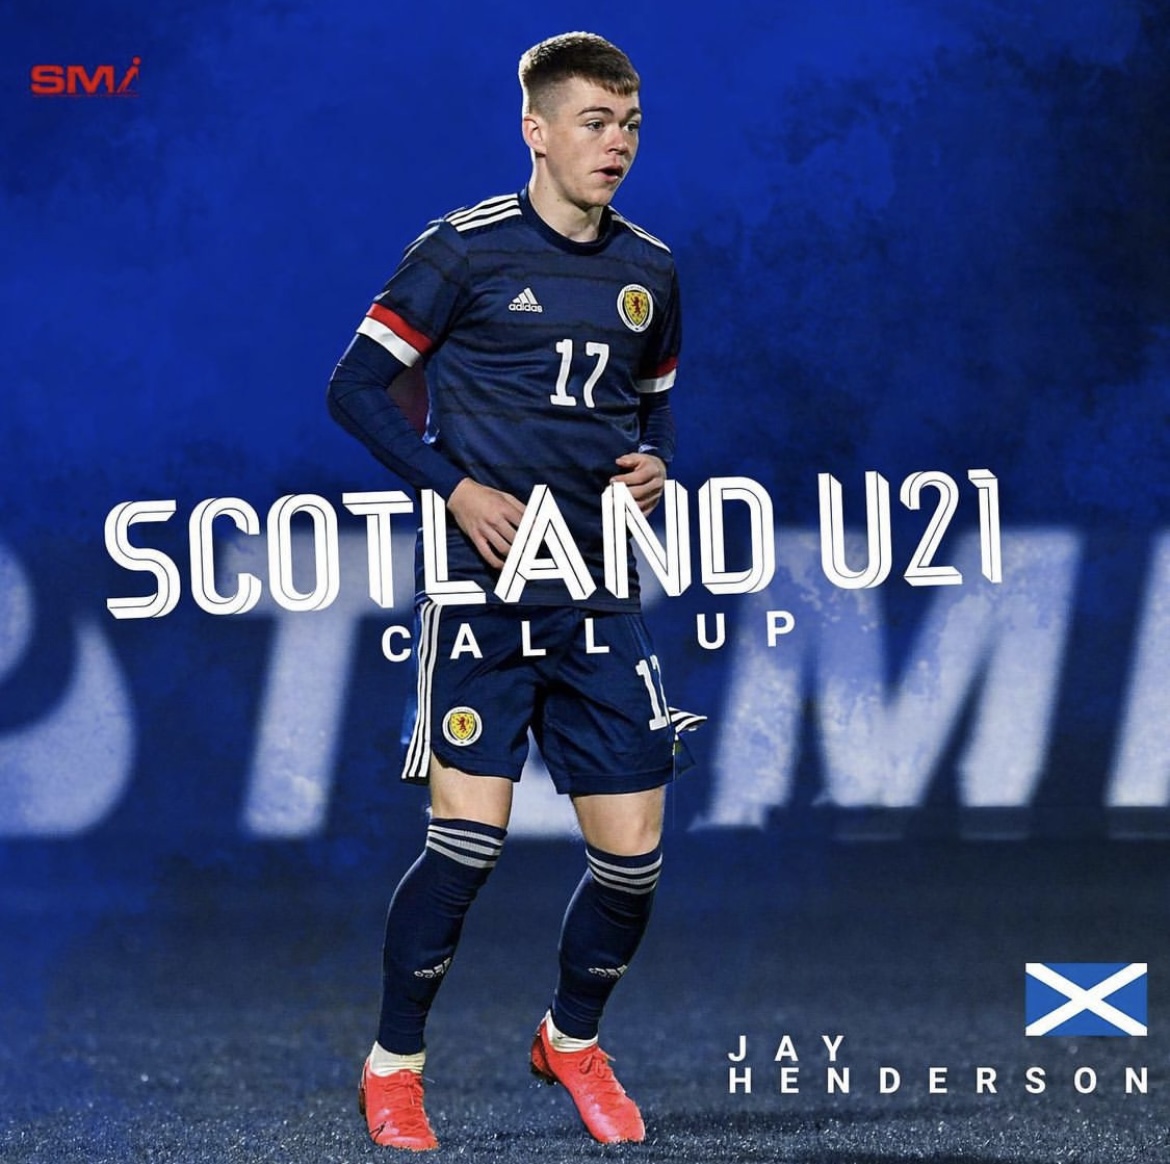 Jay henderson Scotland 21s call up